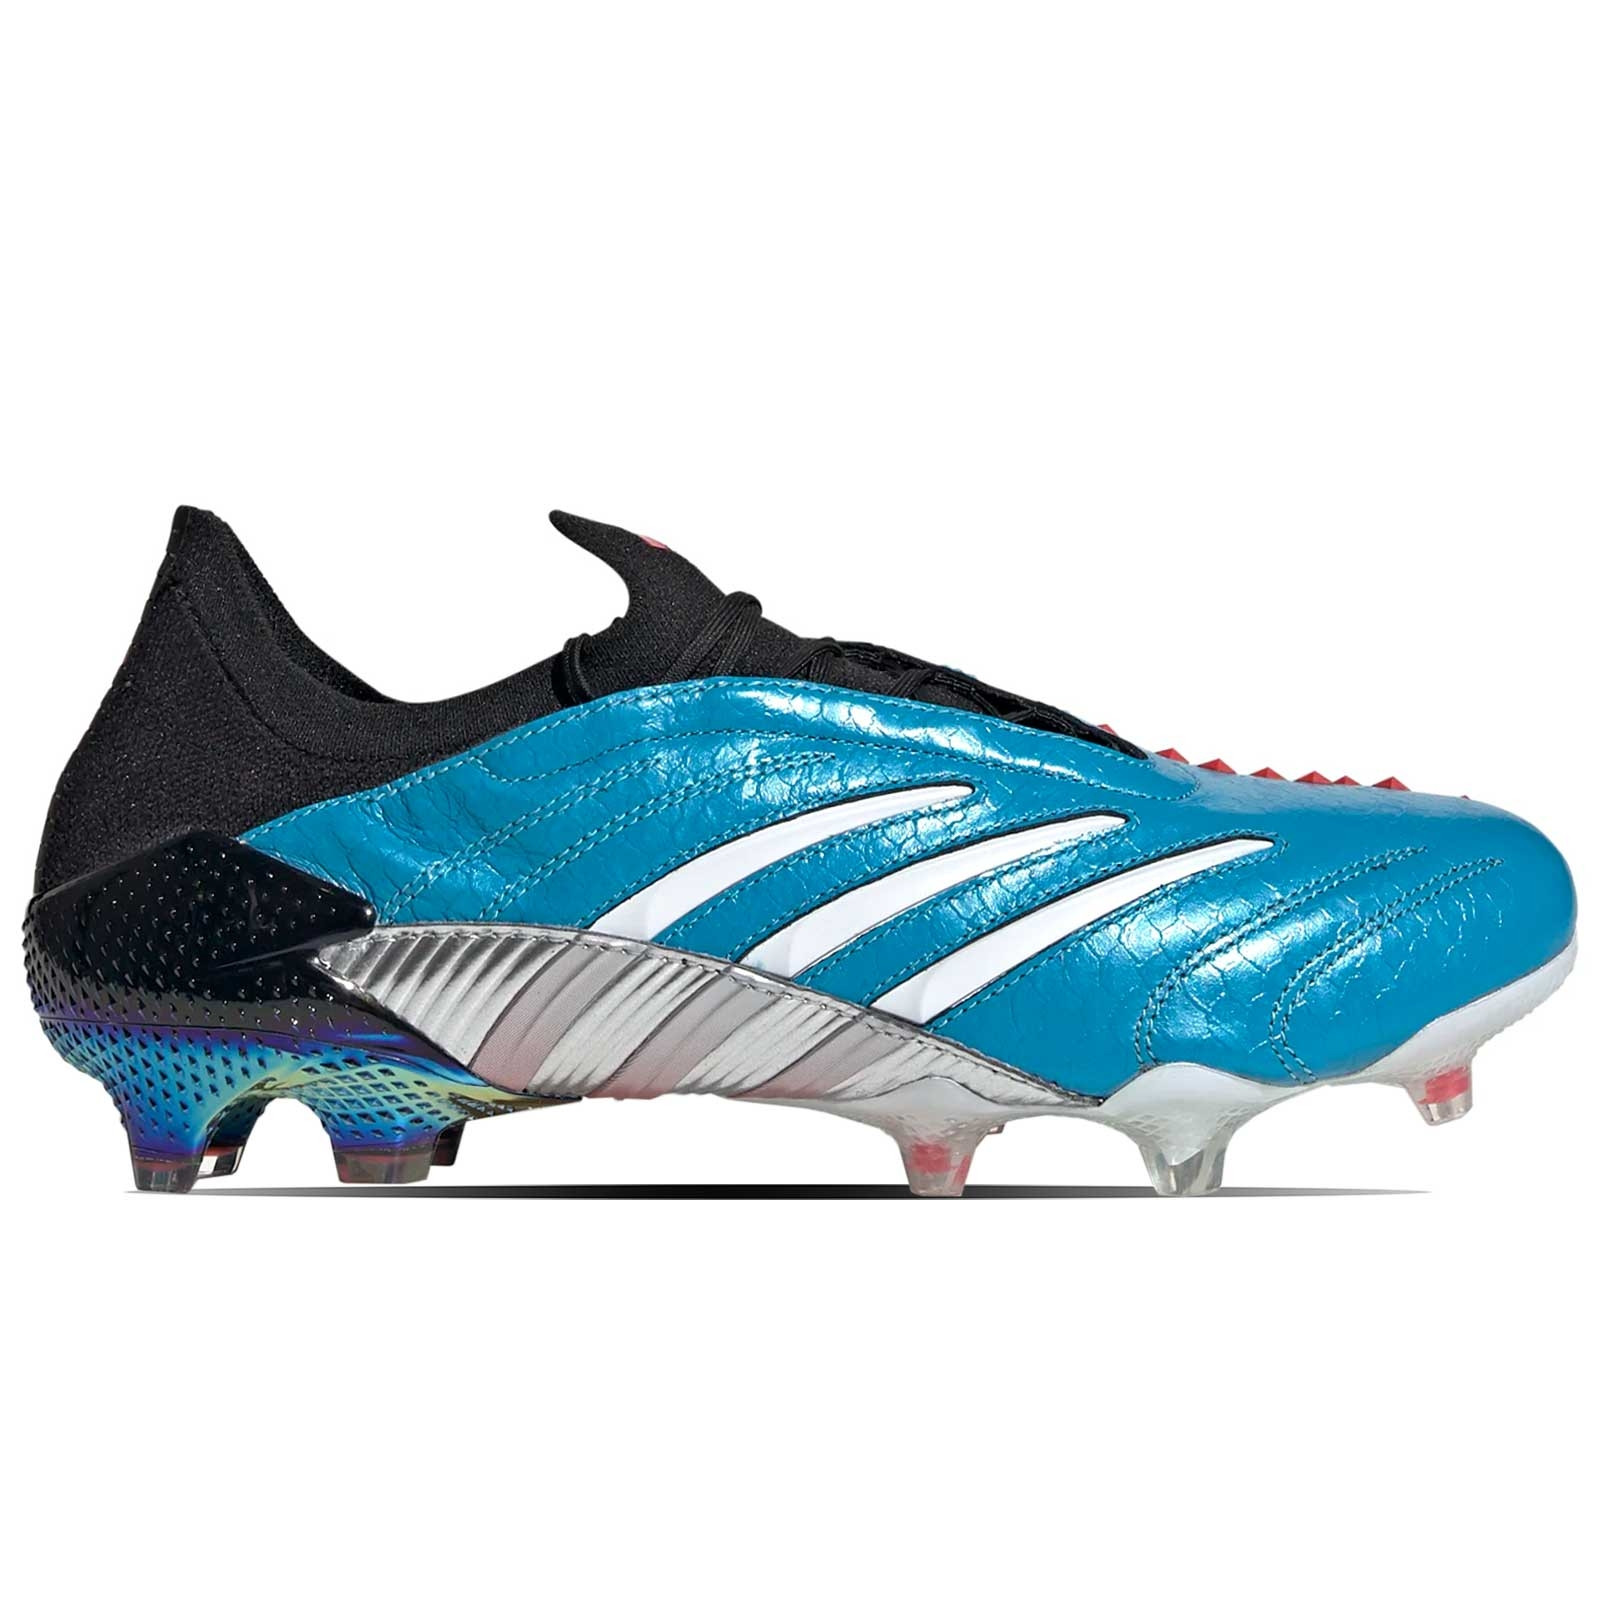 botas de futbol adidas azules